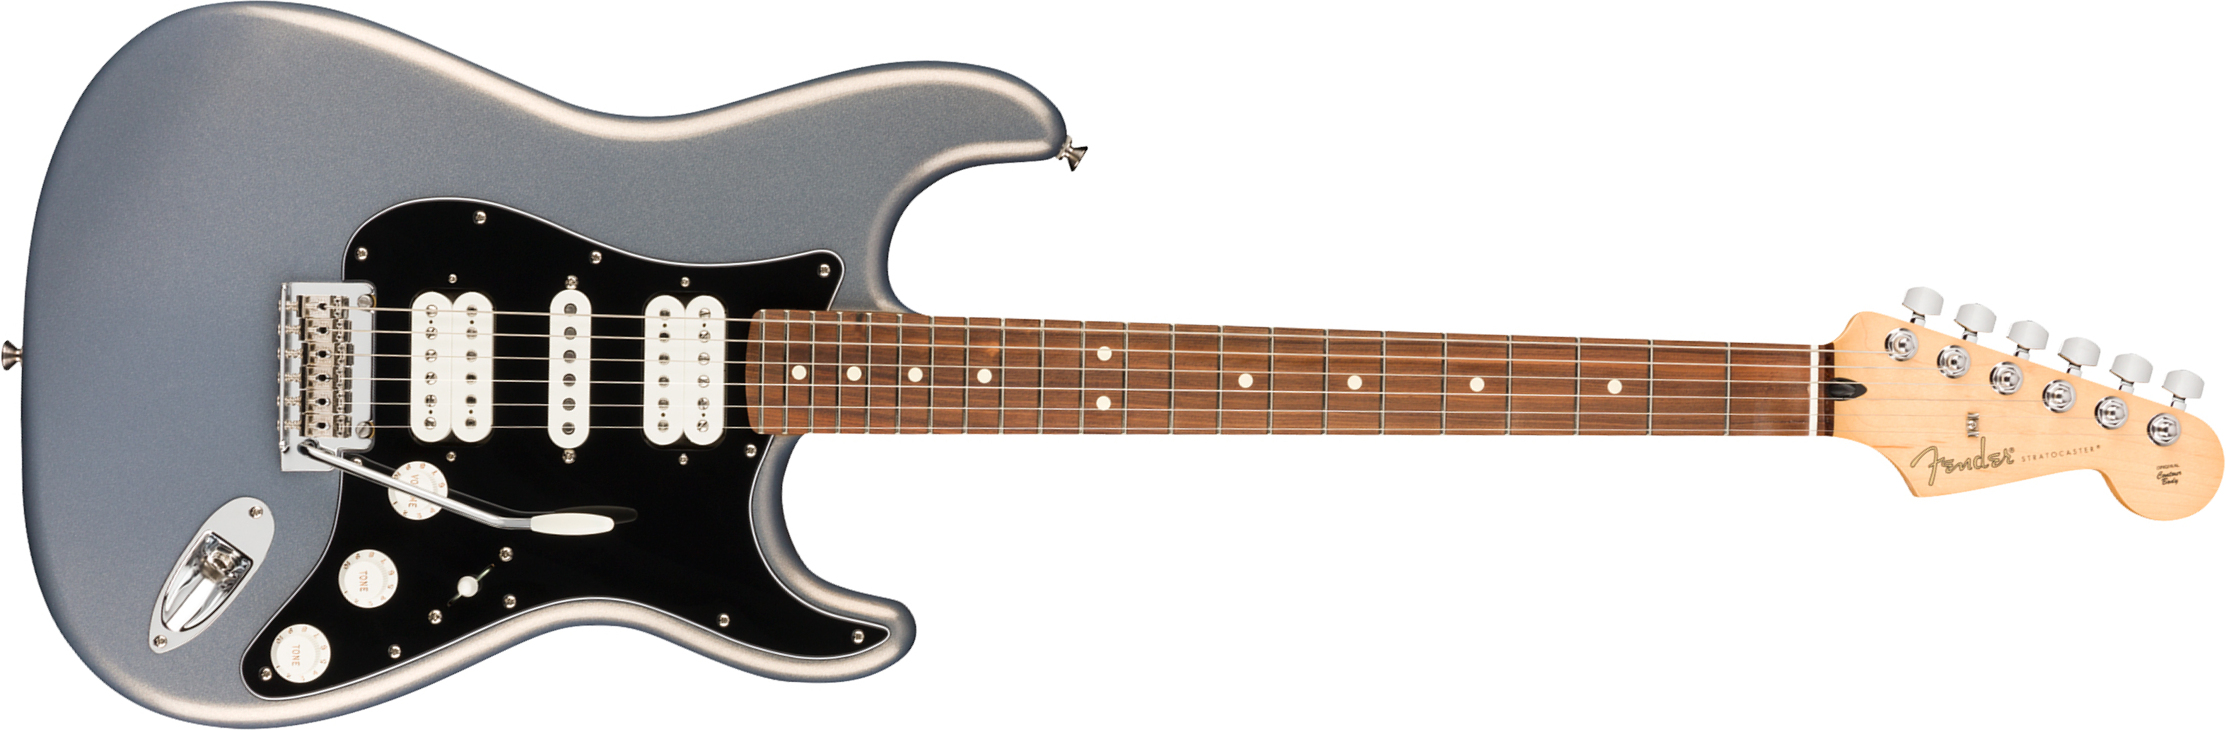 Fender Strat Player Mex Hsh Pf - Silver - Guitare Électrique Forme Str - Main picture